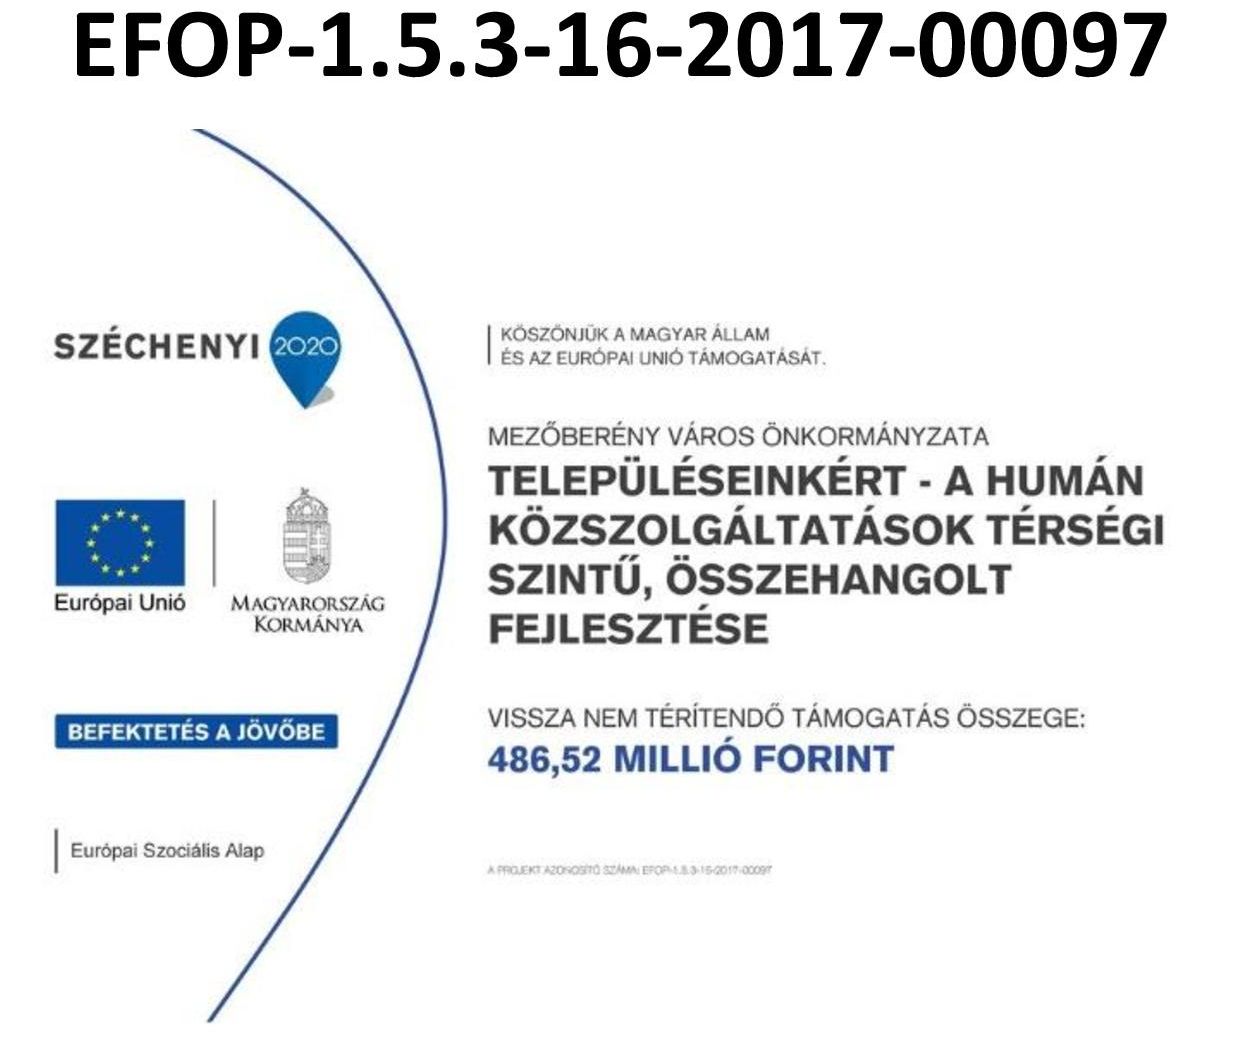 (EFOP) Településeinkért - A humán közszolgáltatások térségi szintű, összehangolt fejlesztése